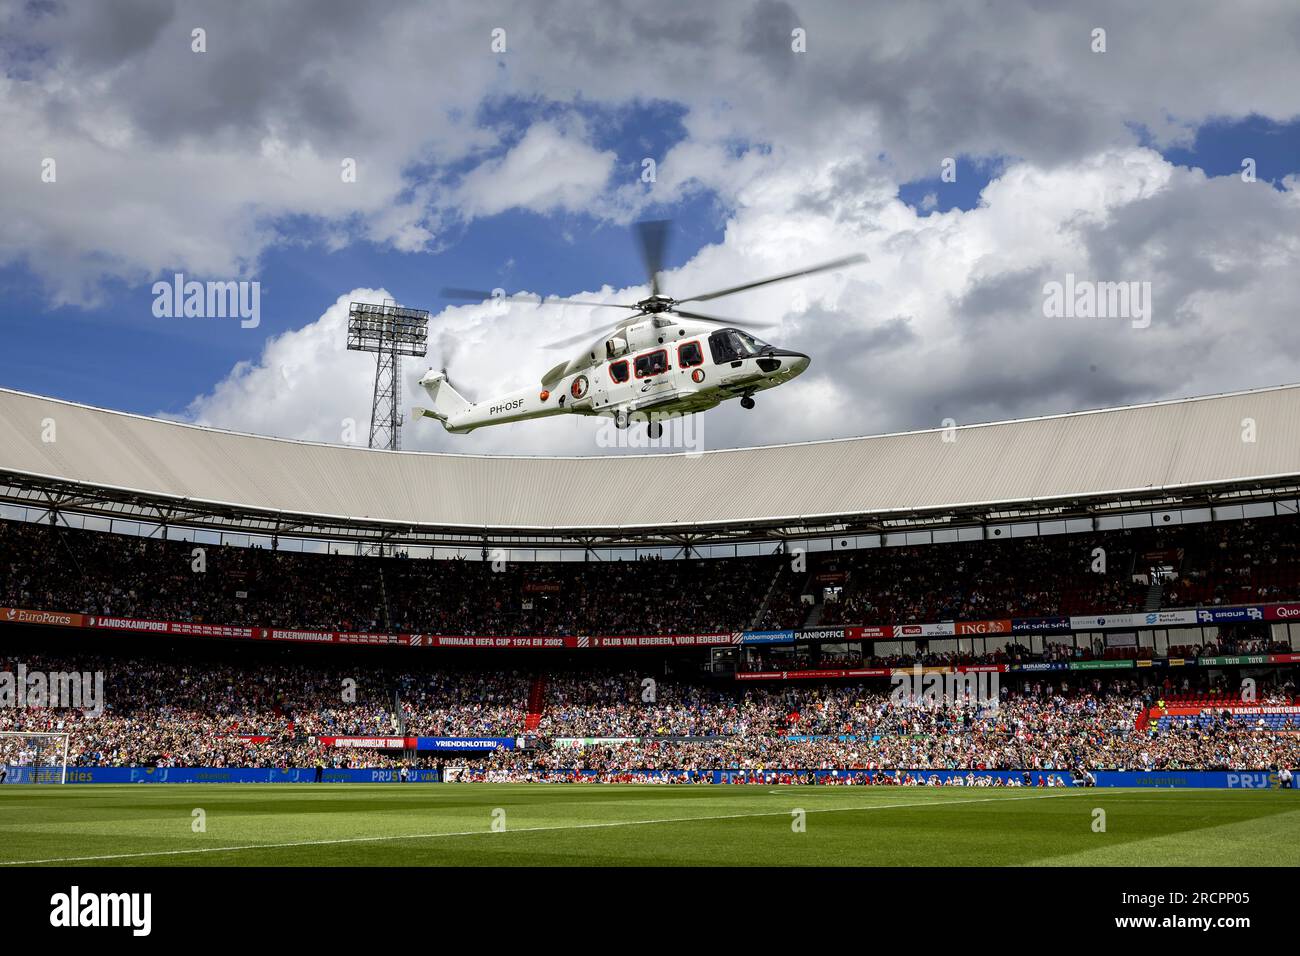 ROTTERDAM - Ein Hubschrauber mit neuen Feyenoord-Spielern landet im Stadion De Kuip während des jährlichen Open Day. ANP ROBIN VAN LONKHUIJSEN niederlande raus - belgien raus Stockfoto